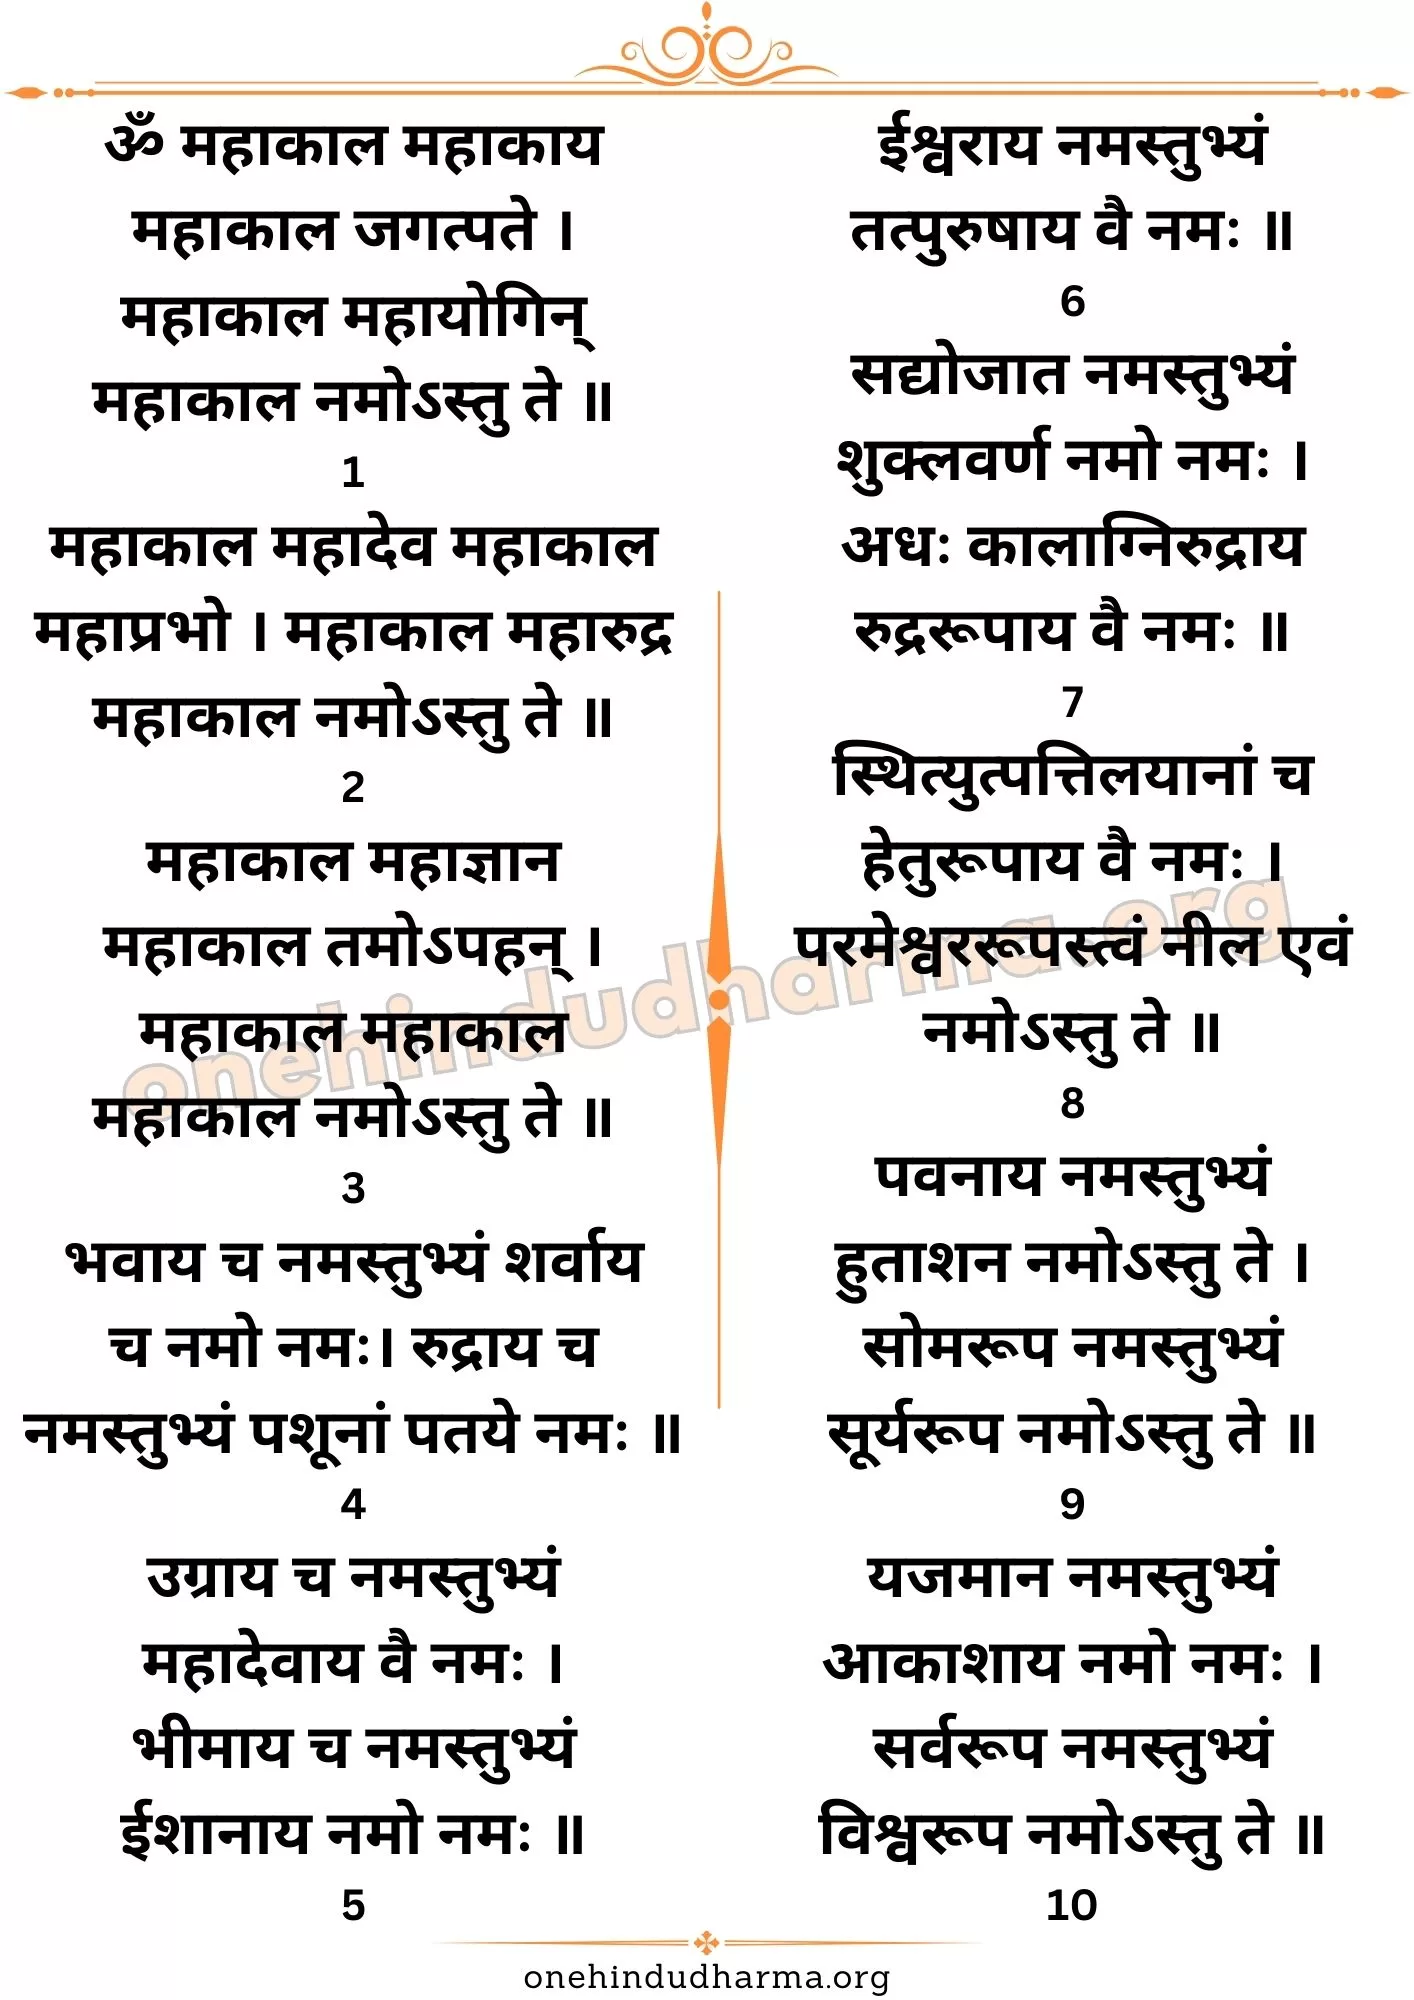 महाकाल स्तोत्र (Mahakal Stotra Lyrics In Sanskrit)